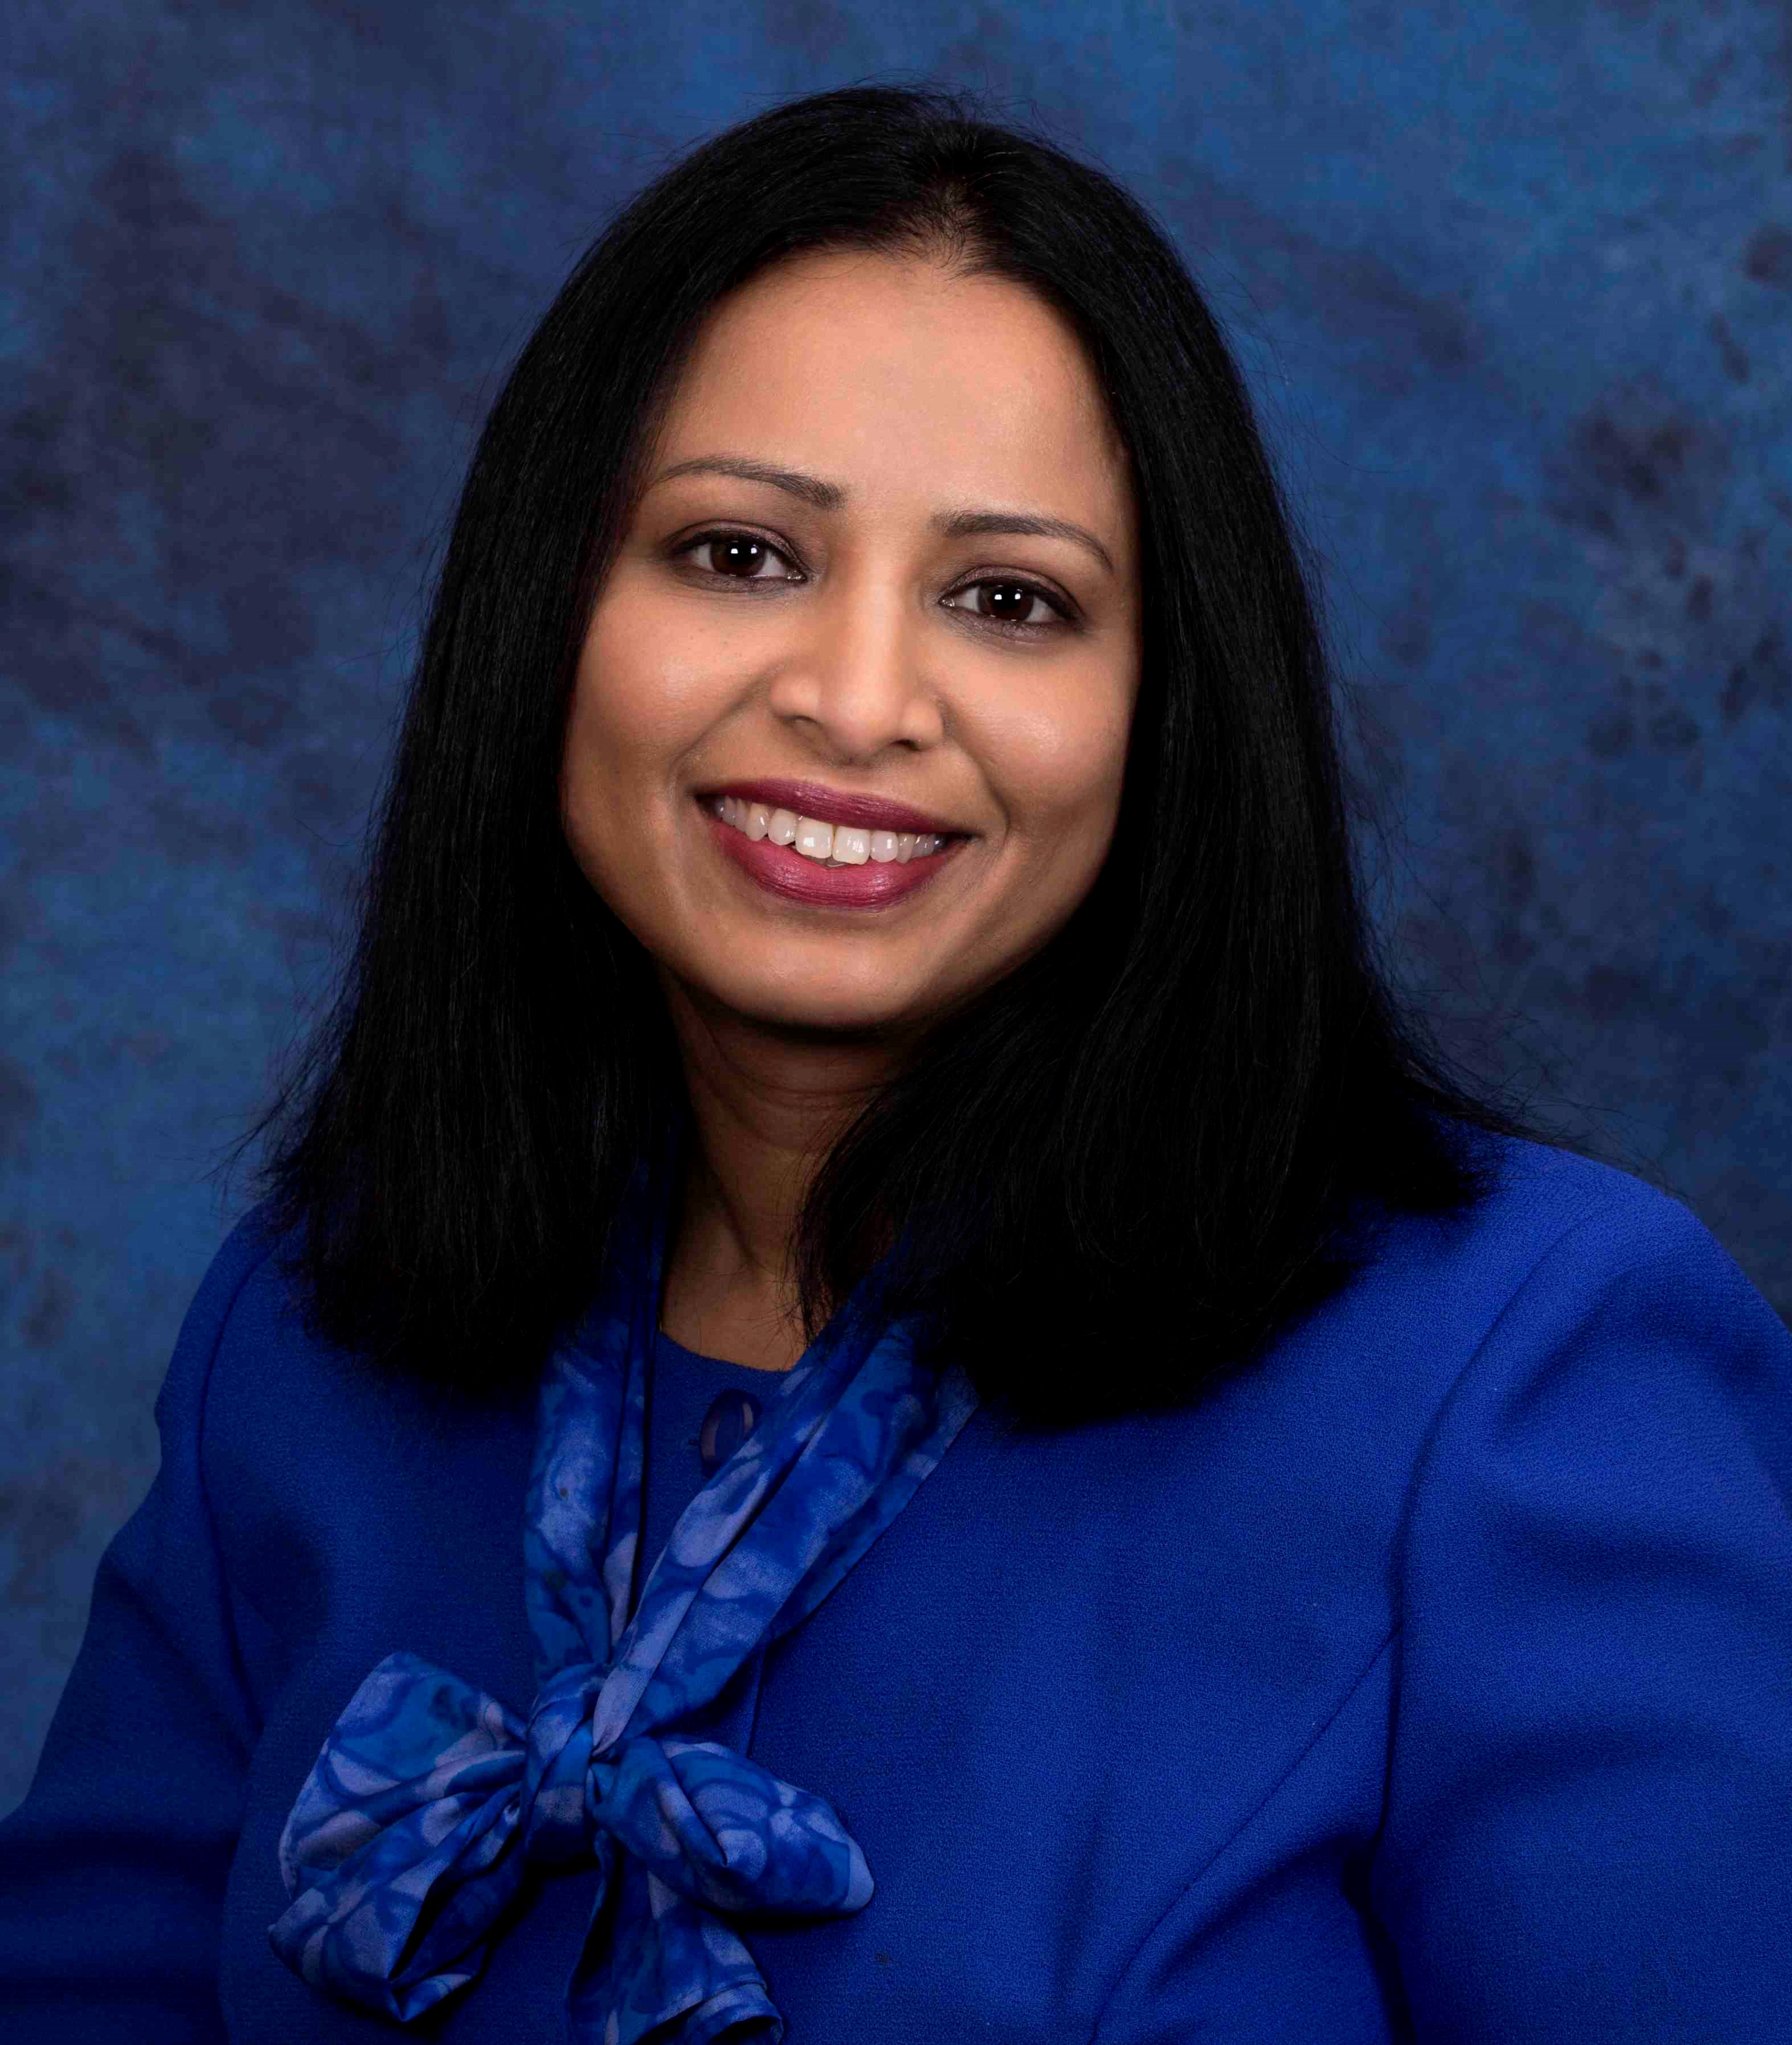 Image of presenter Sunitha Zechariah